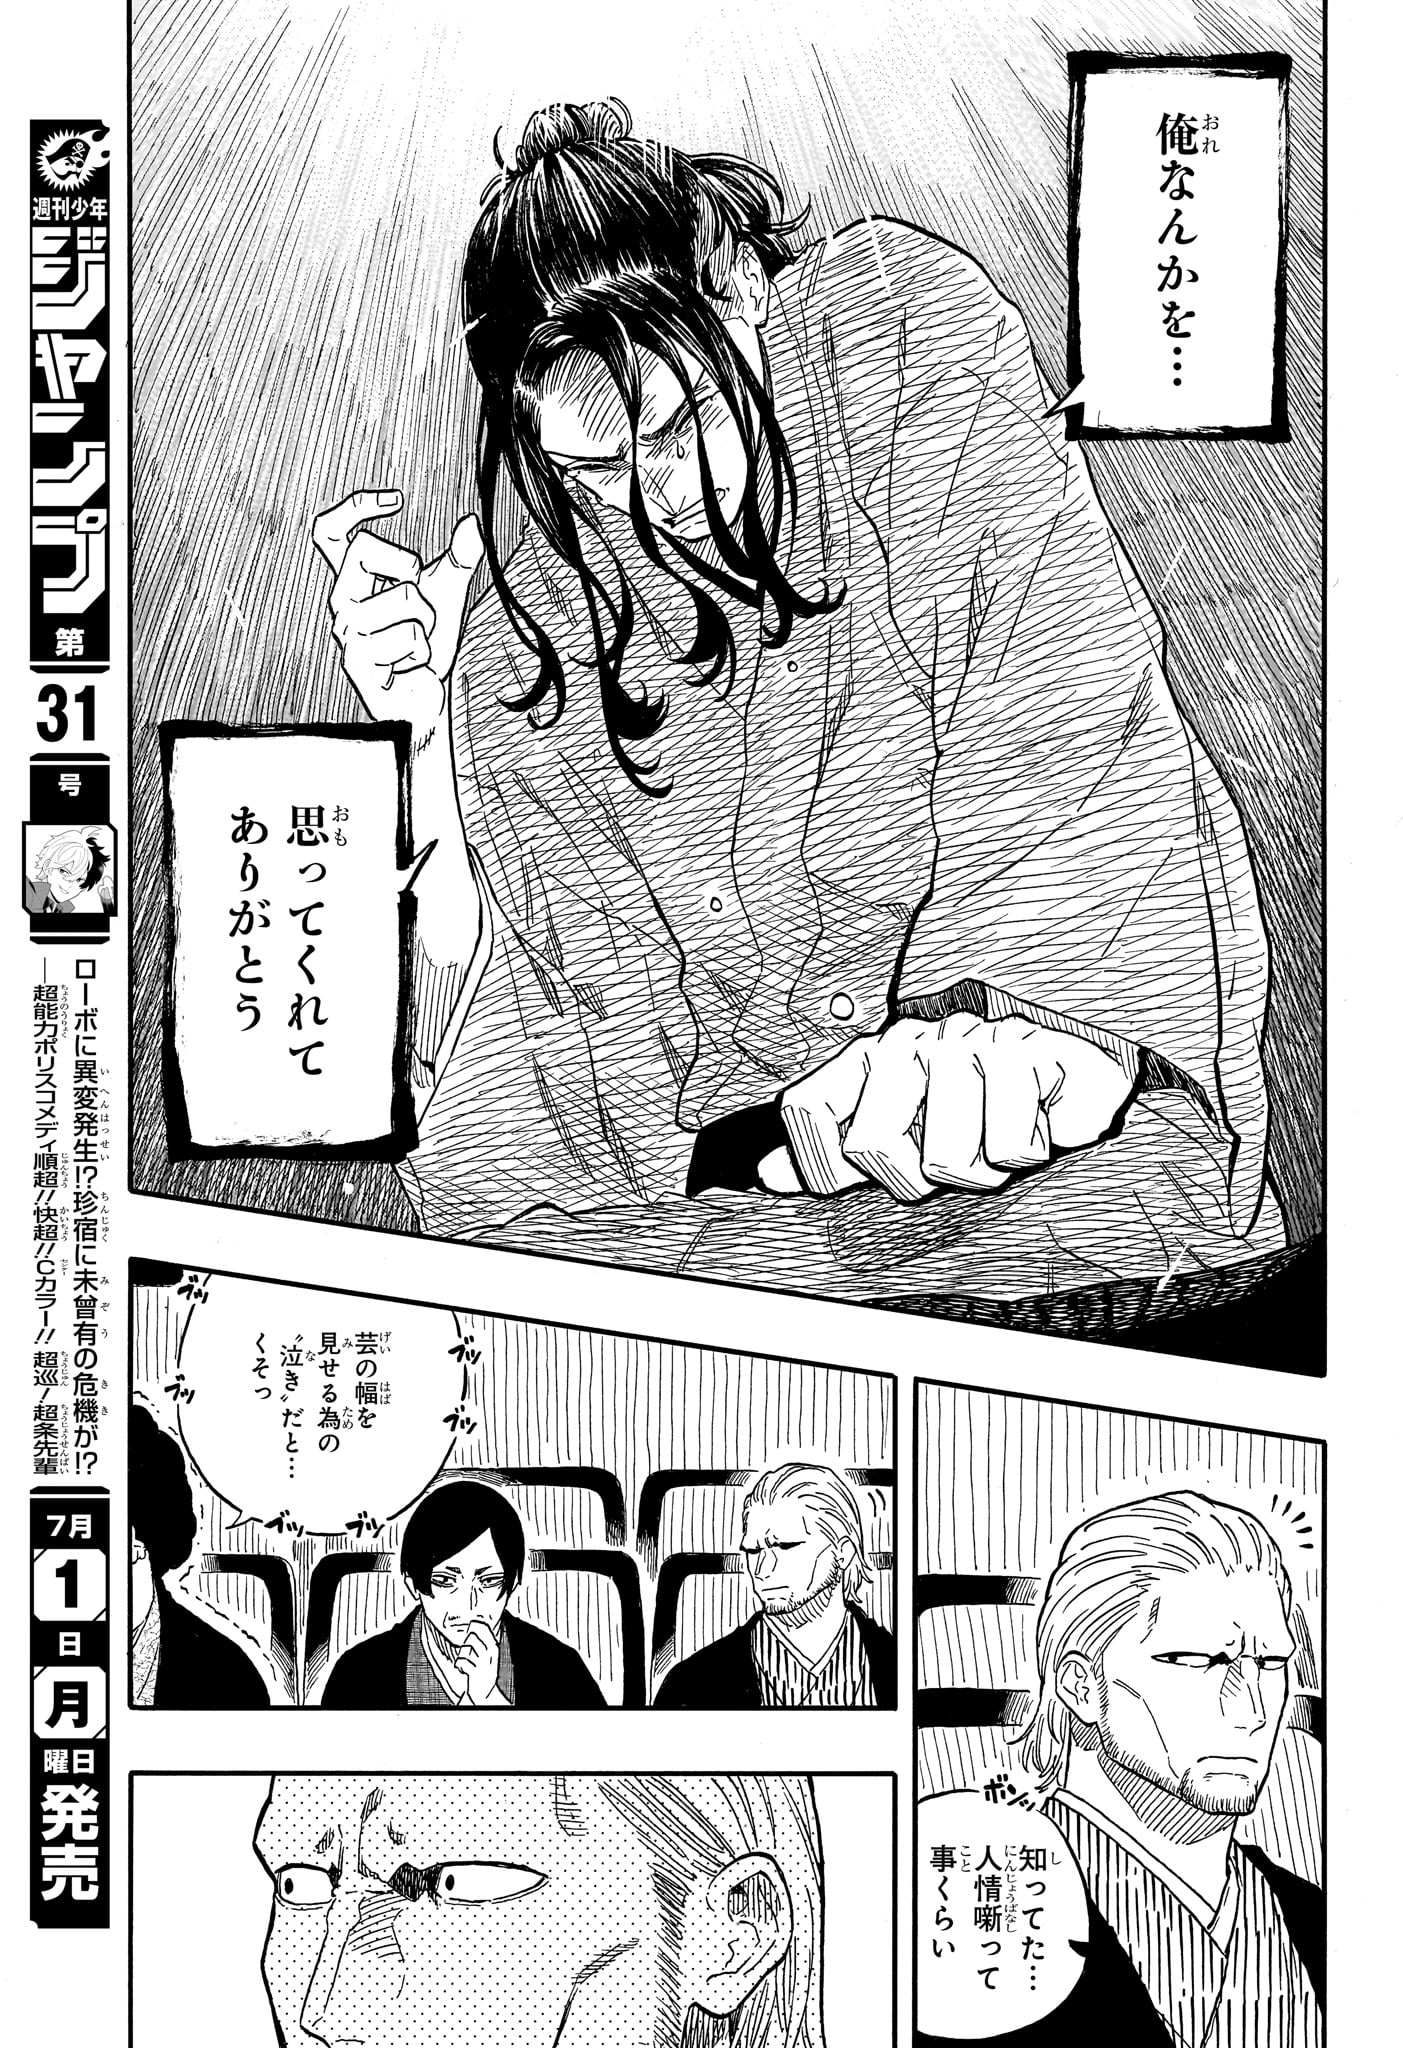 Akane-Banashi - Chapter 115 - Page 11